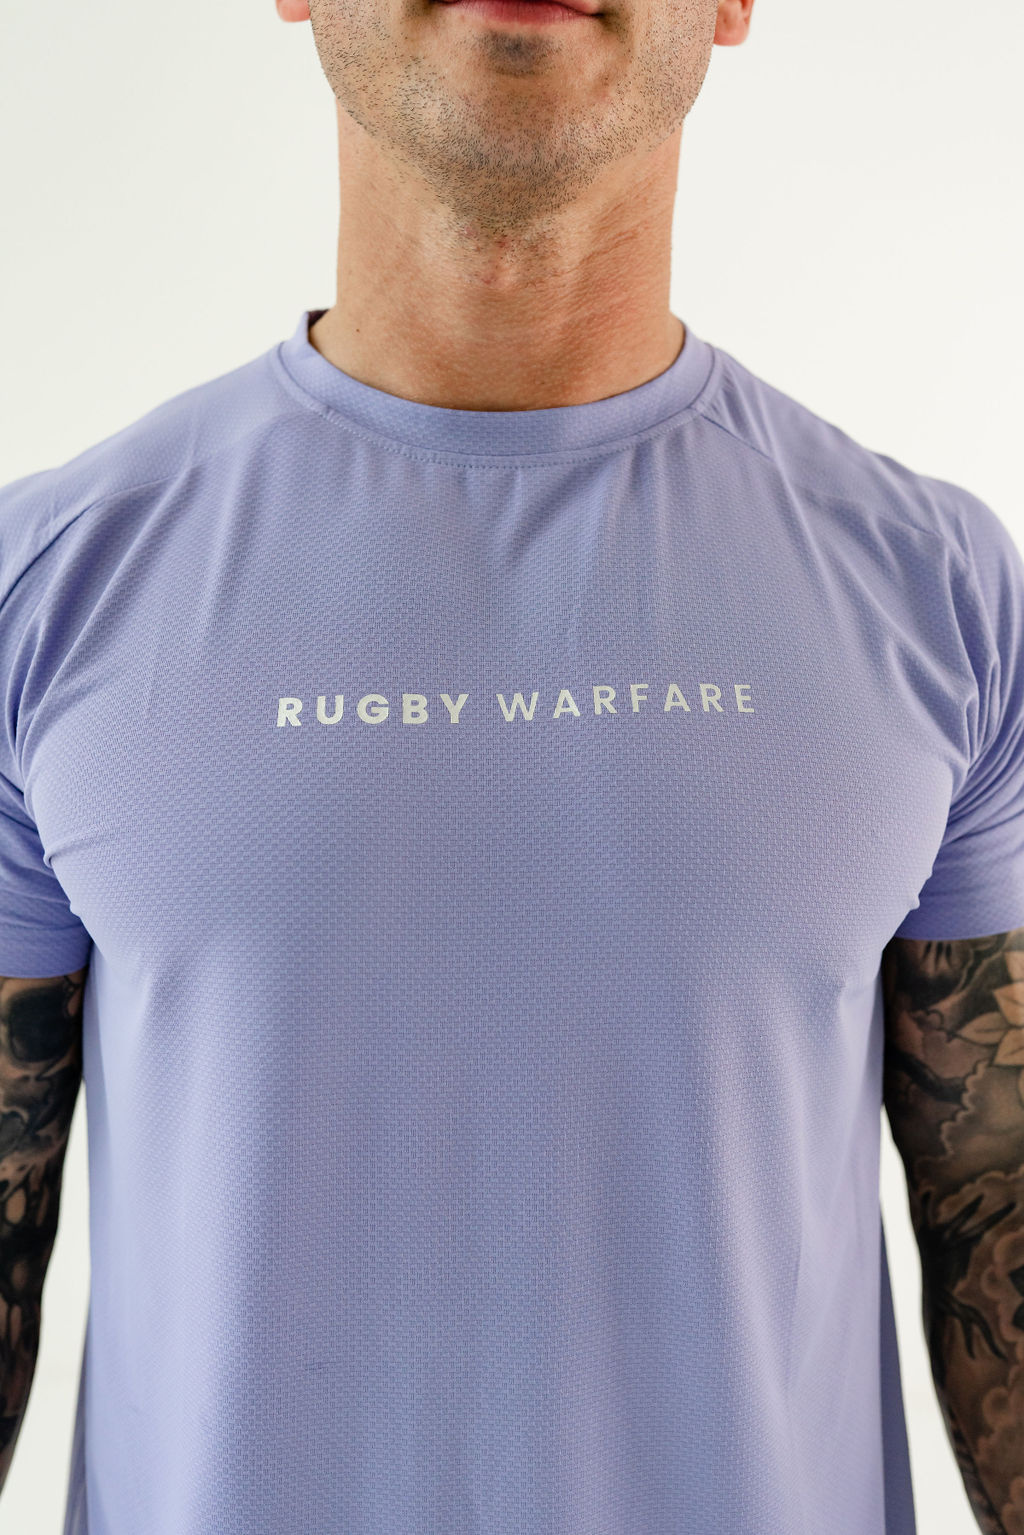 rugby tshirt